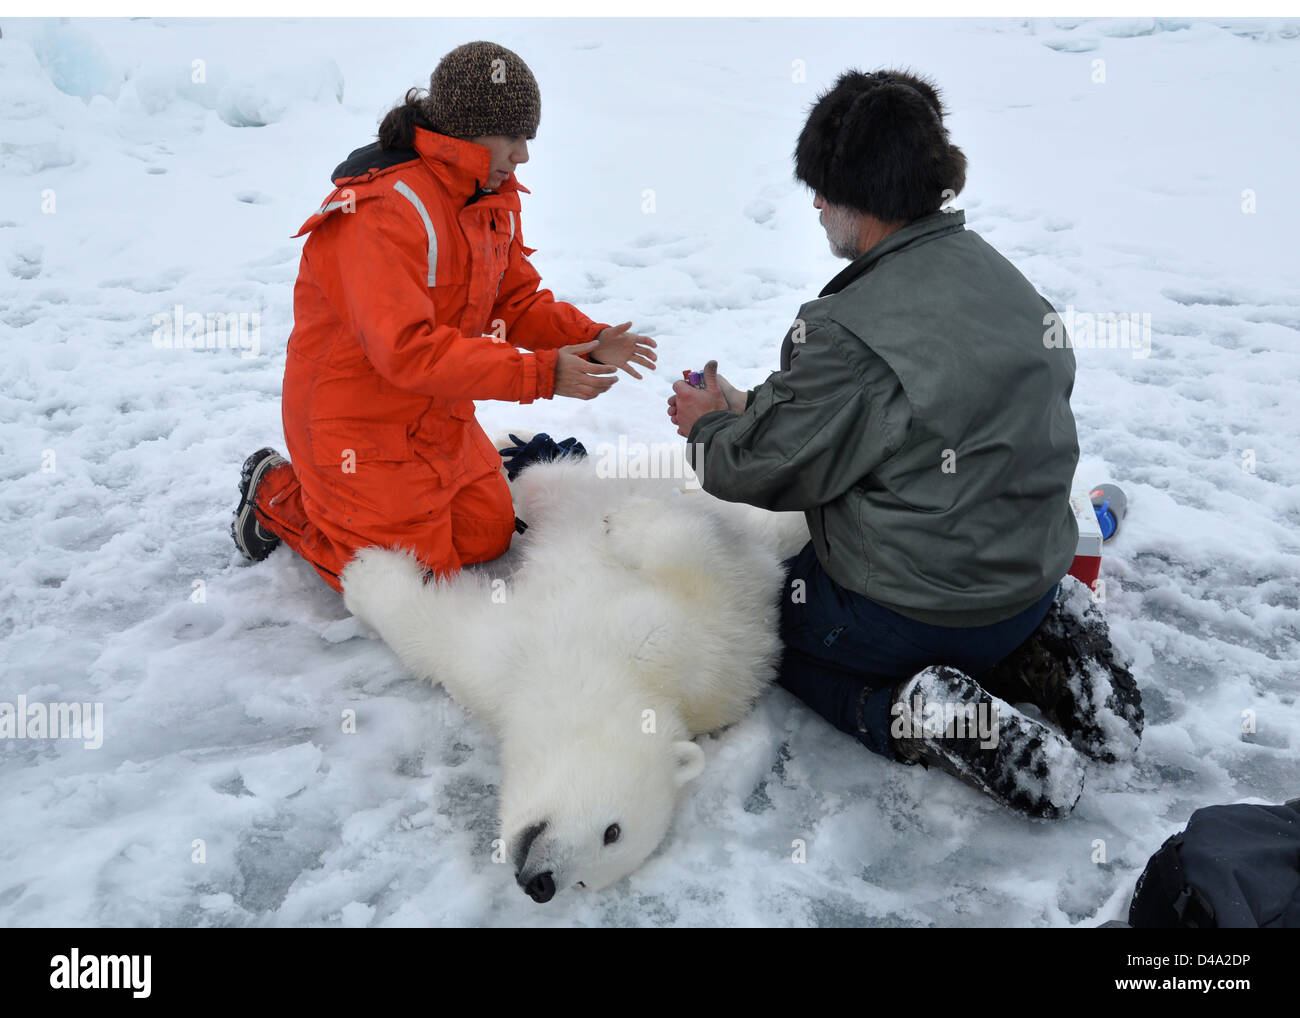 George Durner ein polarer Forscher aus dem US Geological Survey übergibt Fläschchen Christina Galvin nach Sammeln von Blutproben aus einem beruhigten Polar Bear Cub 5. Oktober 2009 im arktischen Ozean. Die Coast Guard Cutter Polar Sea transportiert die Wissenschaftler in die hohe Arktis um Eisbär-Forschung zu betreiben. Stockfoto